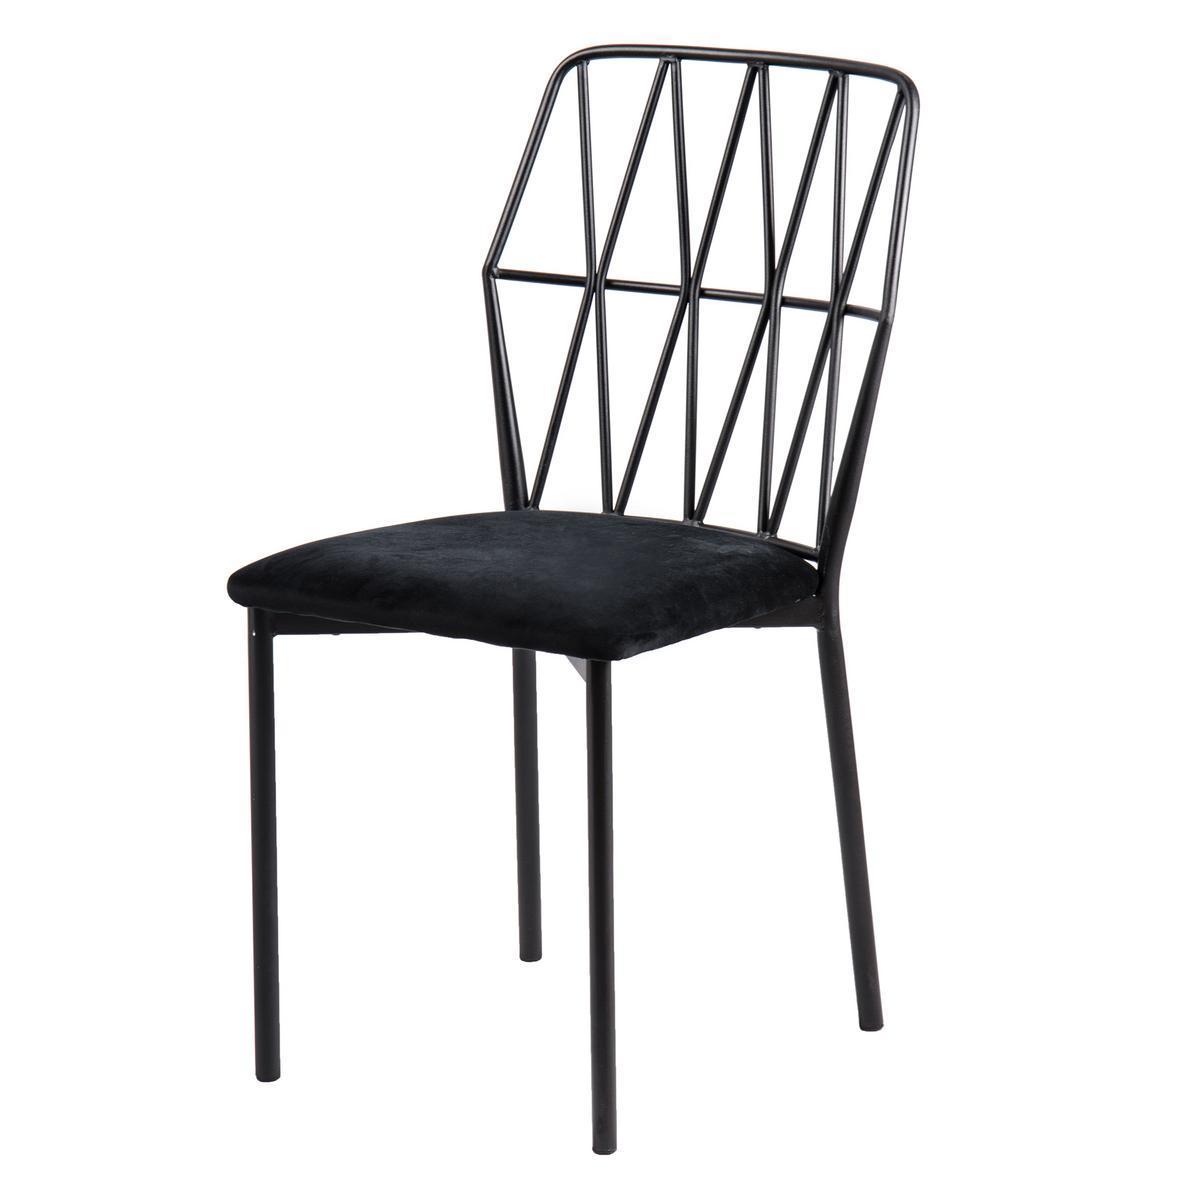 Chaise design - Métal et polyester - 42 x 42,5 x 87,5 cm - Noir